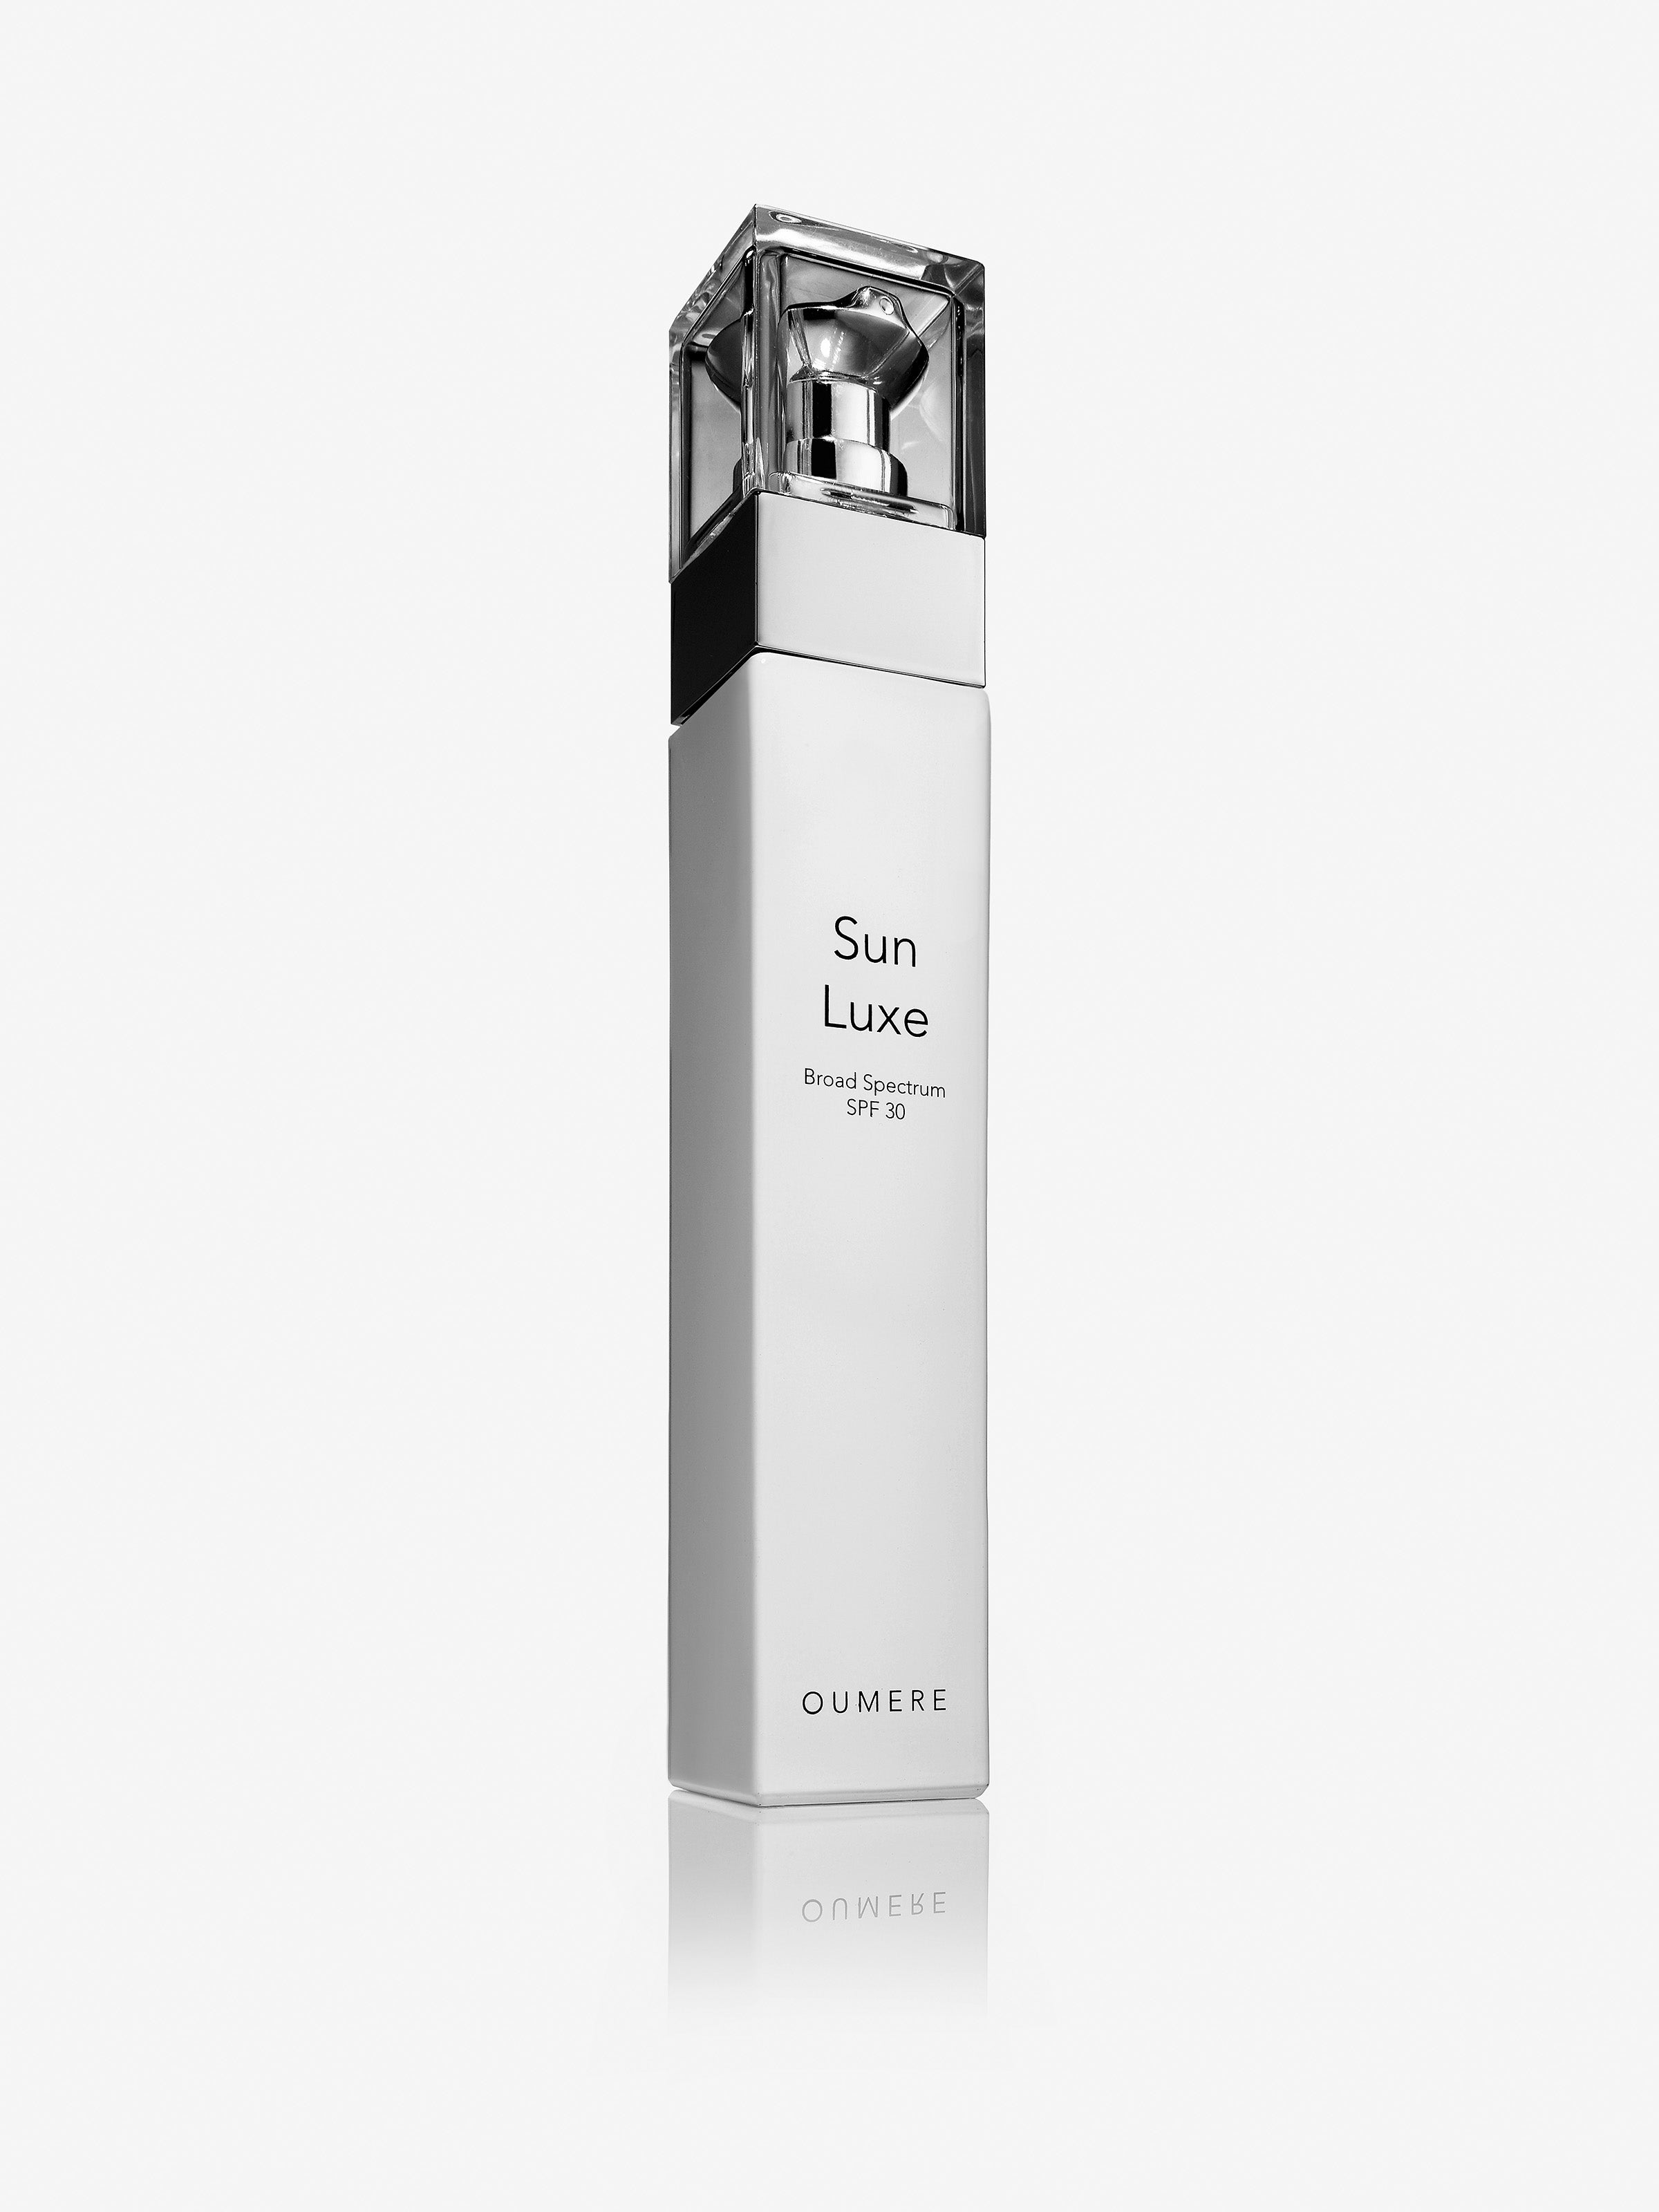 Sun Luxe Mineral Daily Sunscreen - O U M E R E